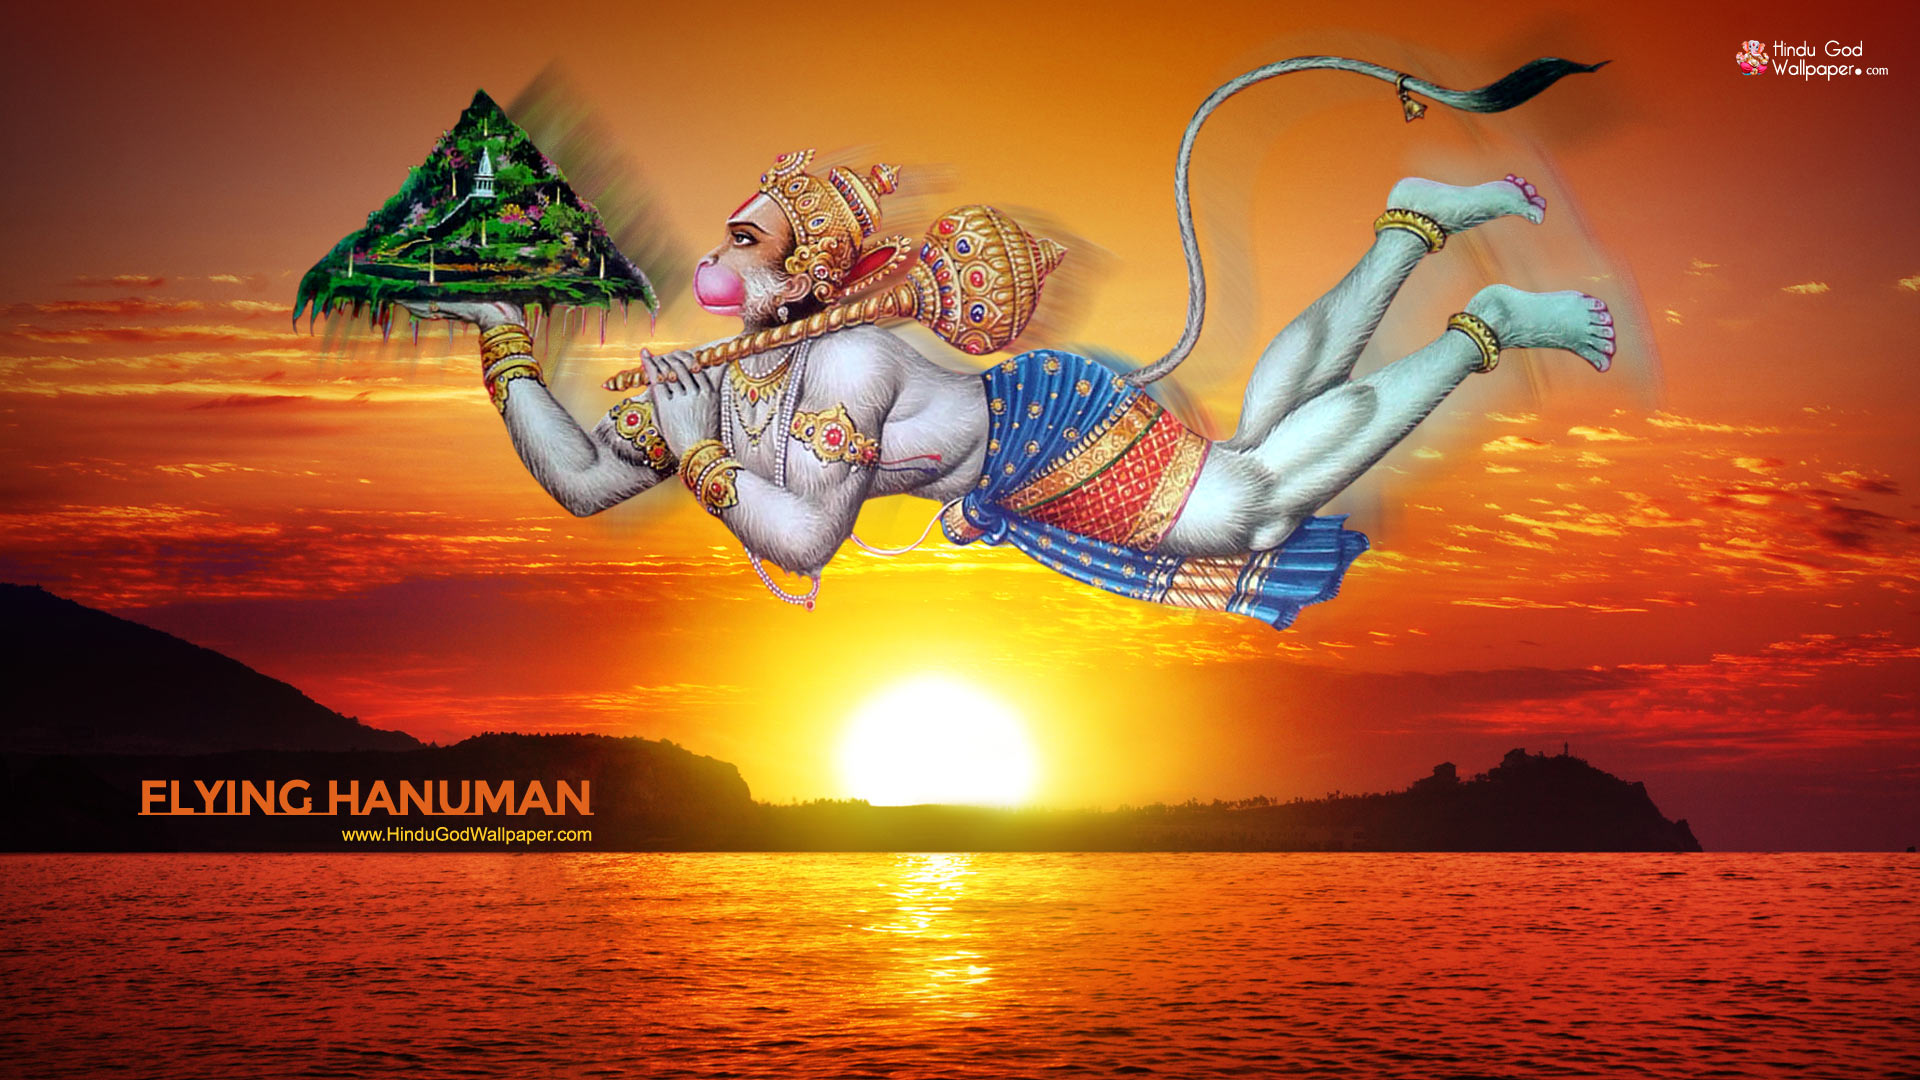 [18+] Hanuman PC Wallpapers | WallpaperSafari.com